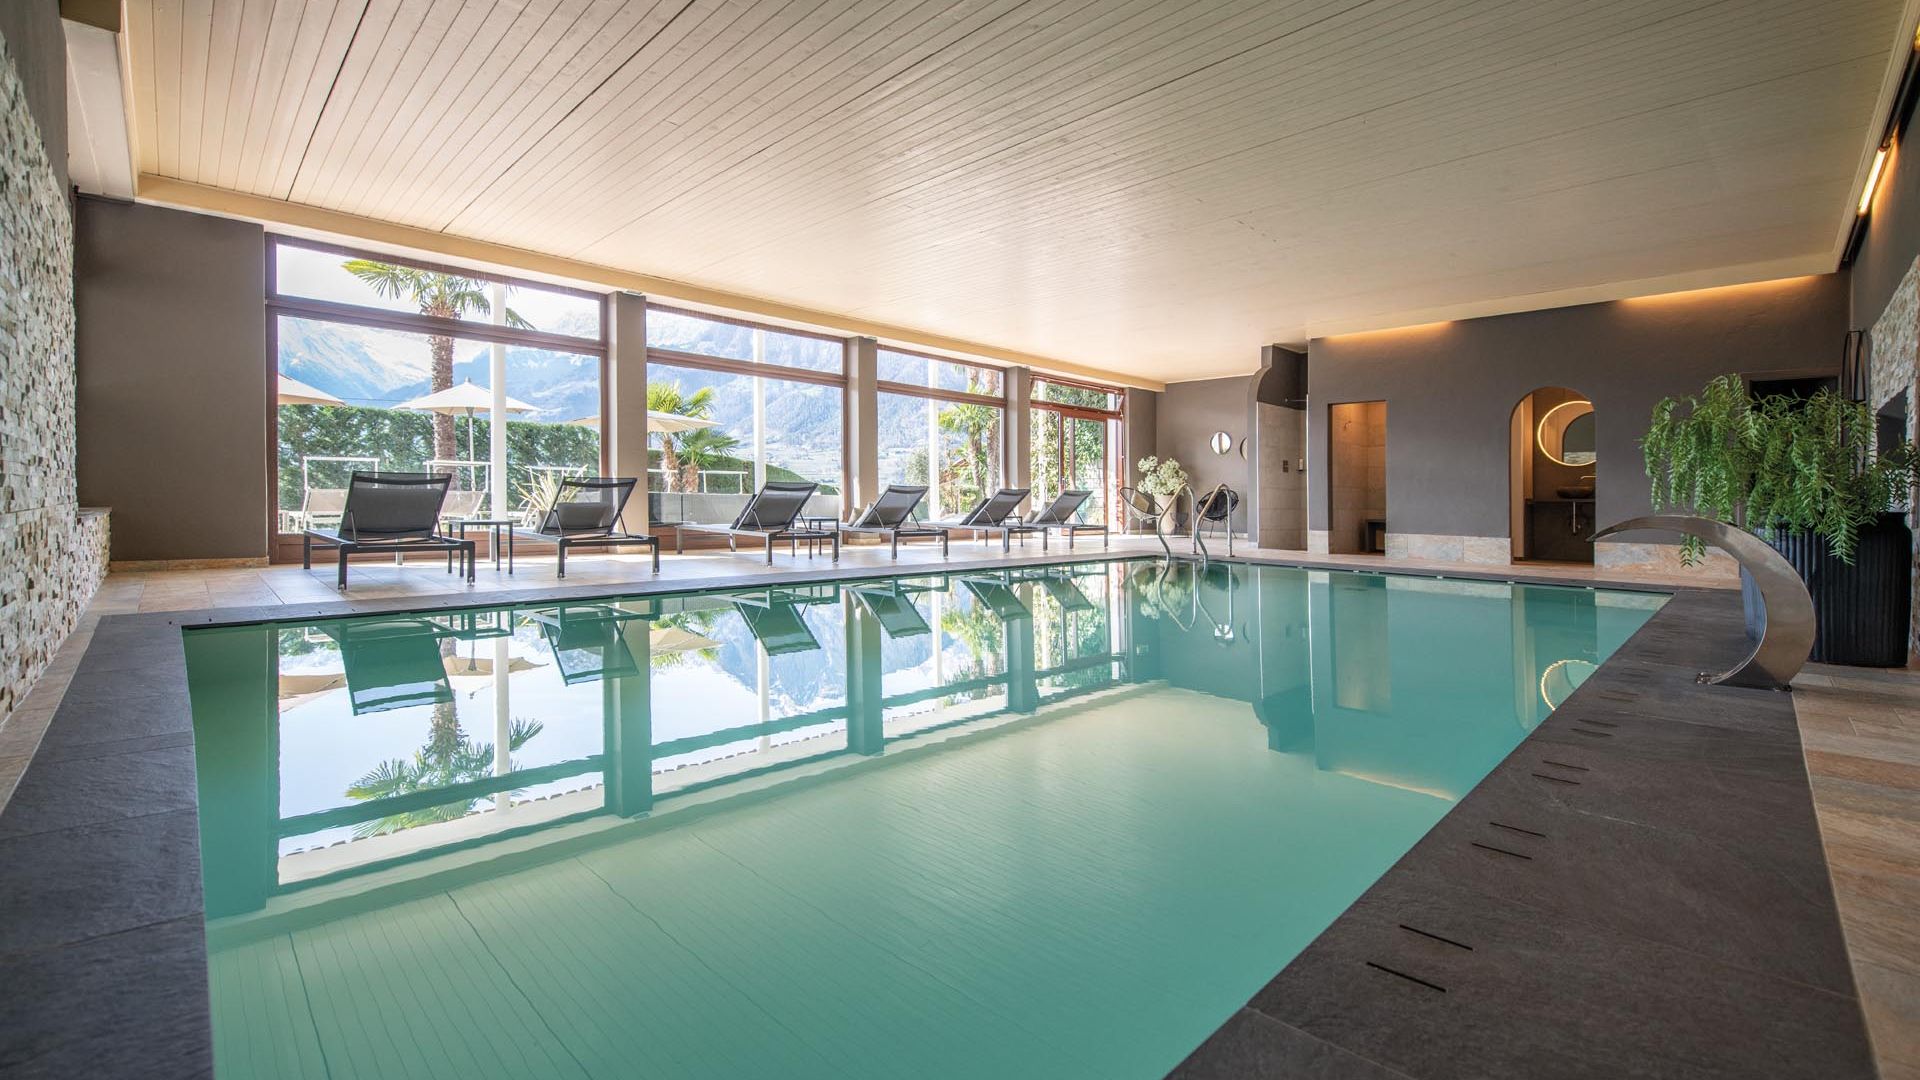 Hotel mit Hallenbad in Schenna Südtirol mit Aussicht auf die Bergwelt von Meran: Walters Garden Hotel Pool